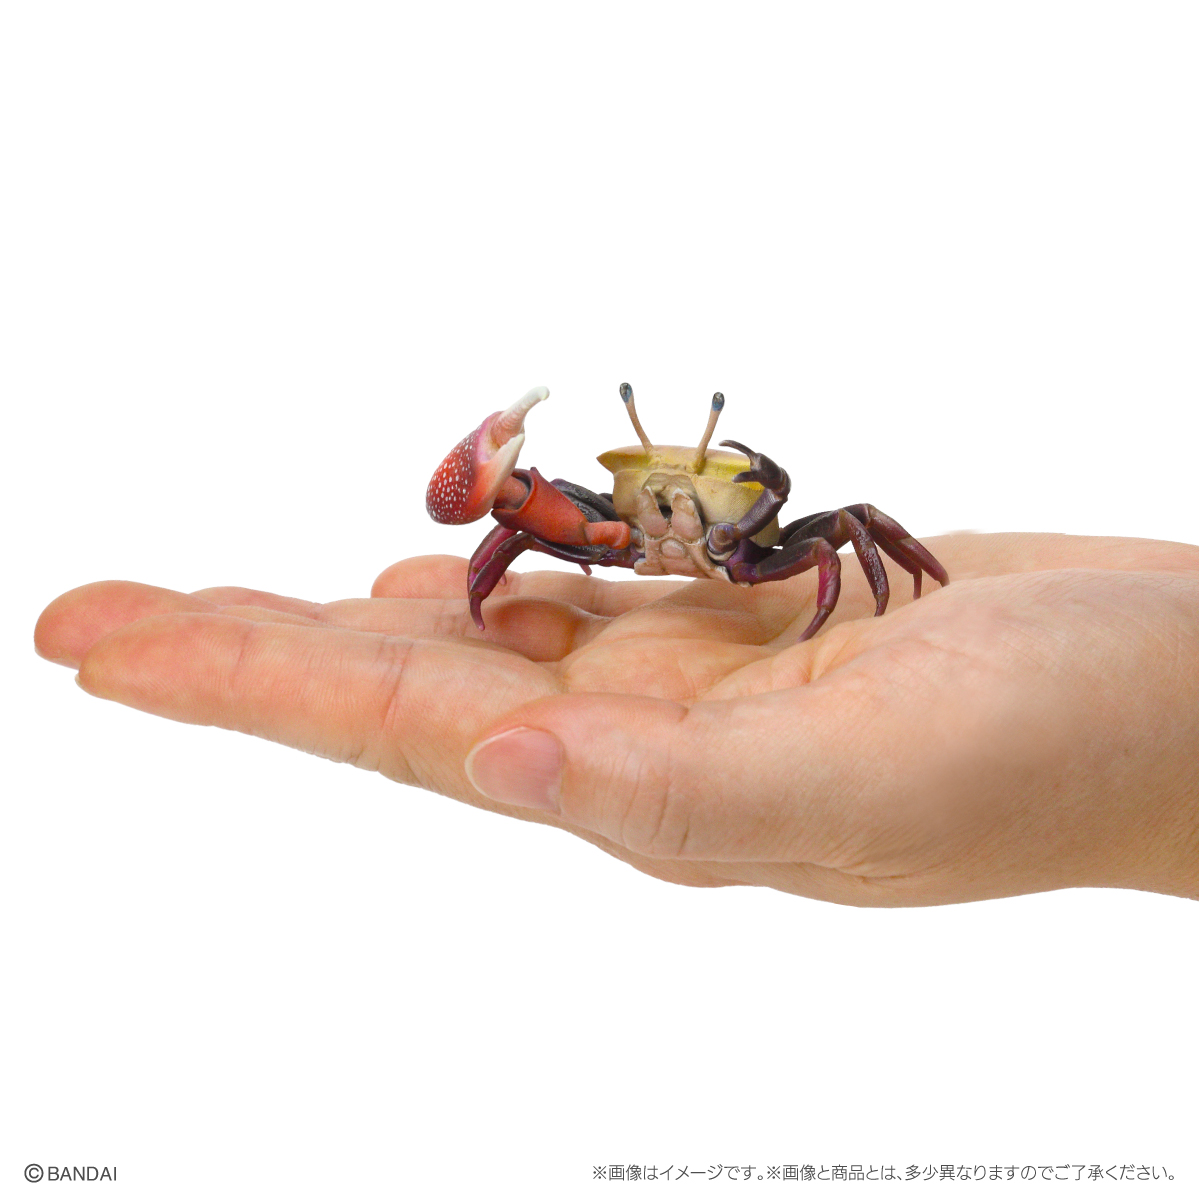 いきもの大図鑑ミニコレクション 甲殻類 | ナムコパークス オンライン 